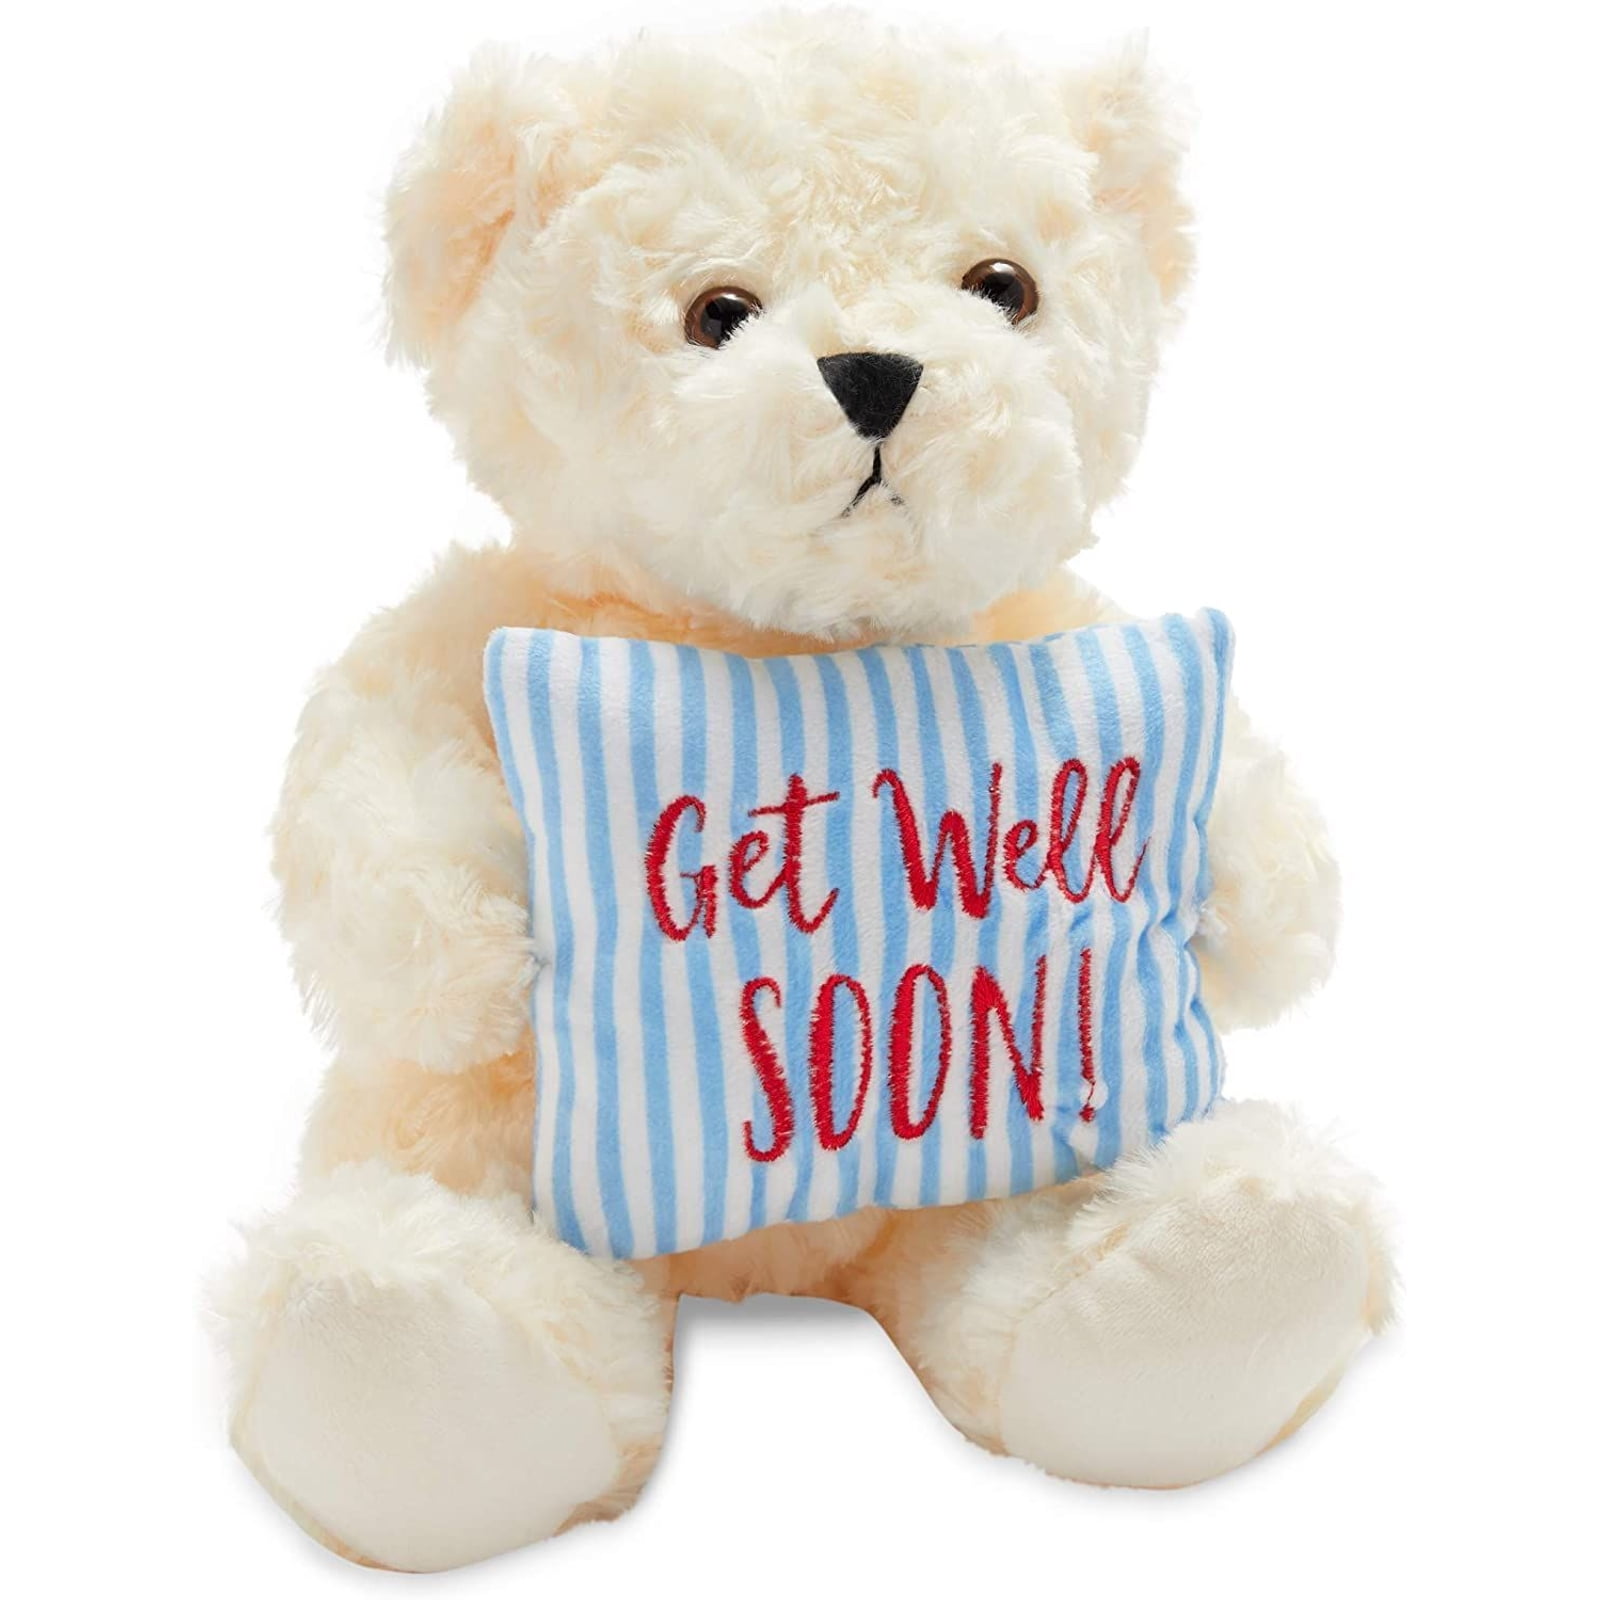 A bear get well soon